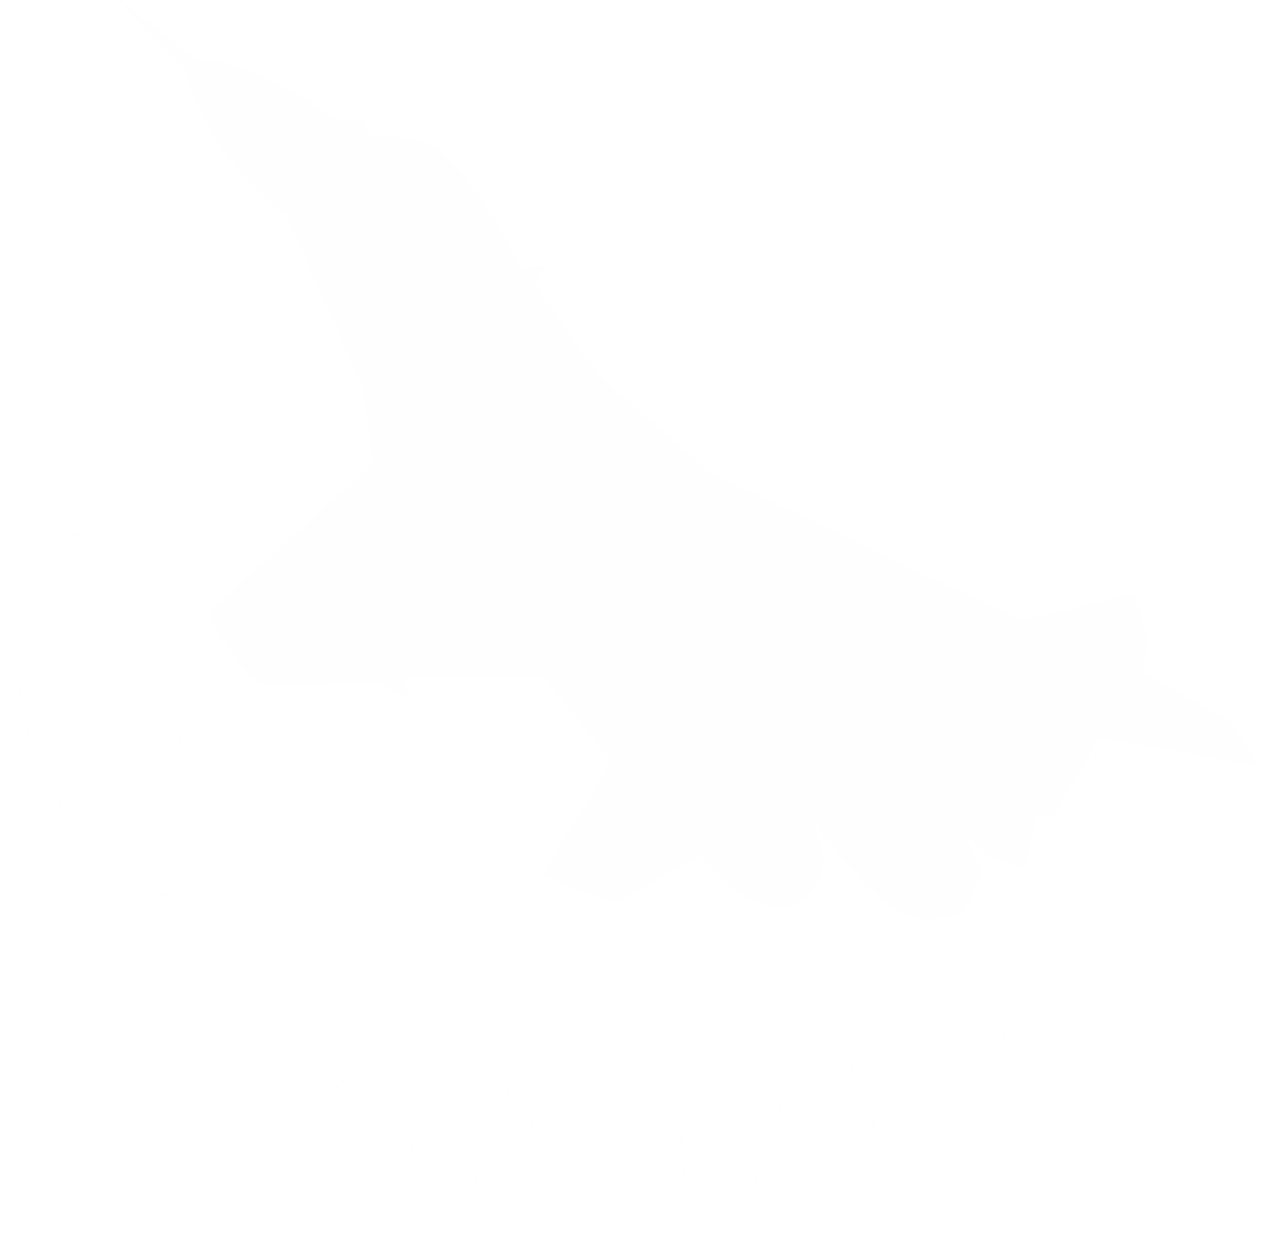 logo strony Lotnictwowojskowe.pl